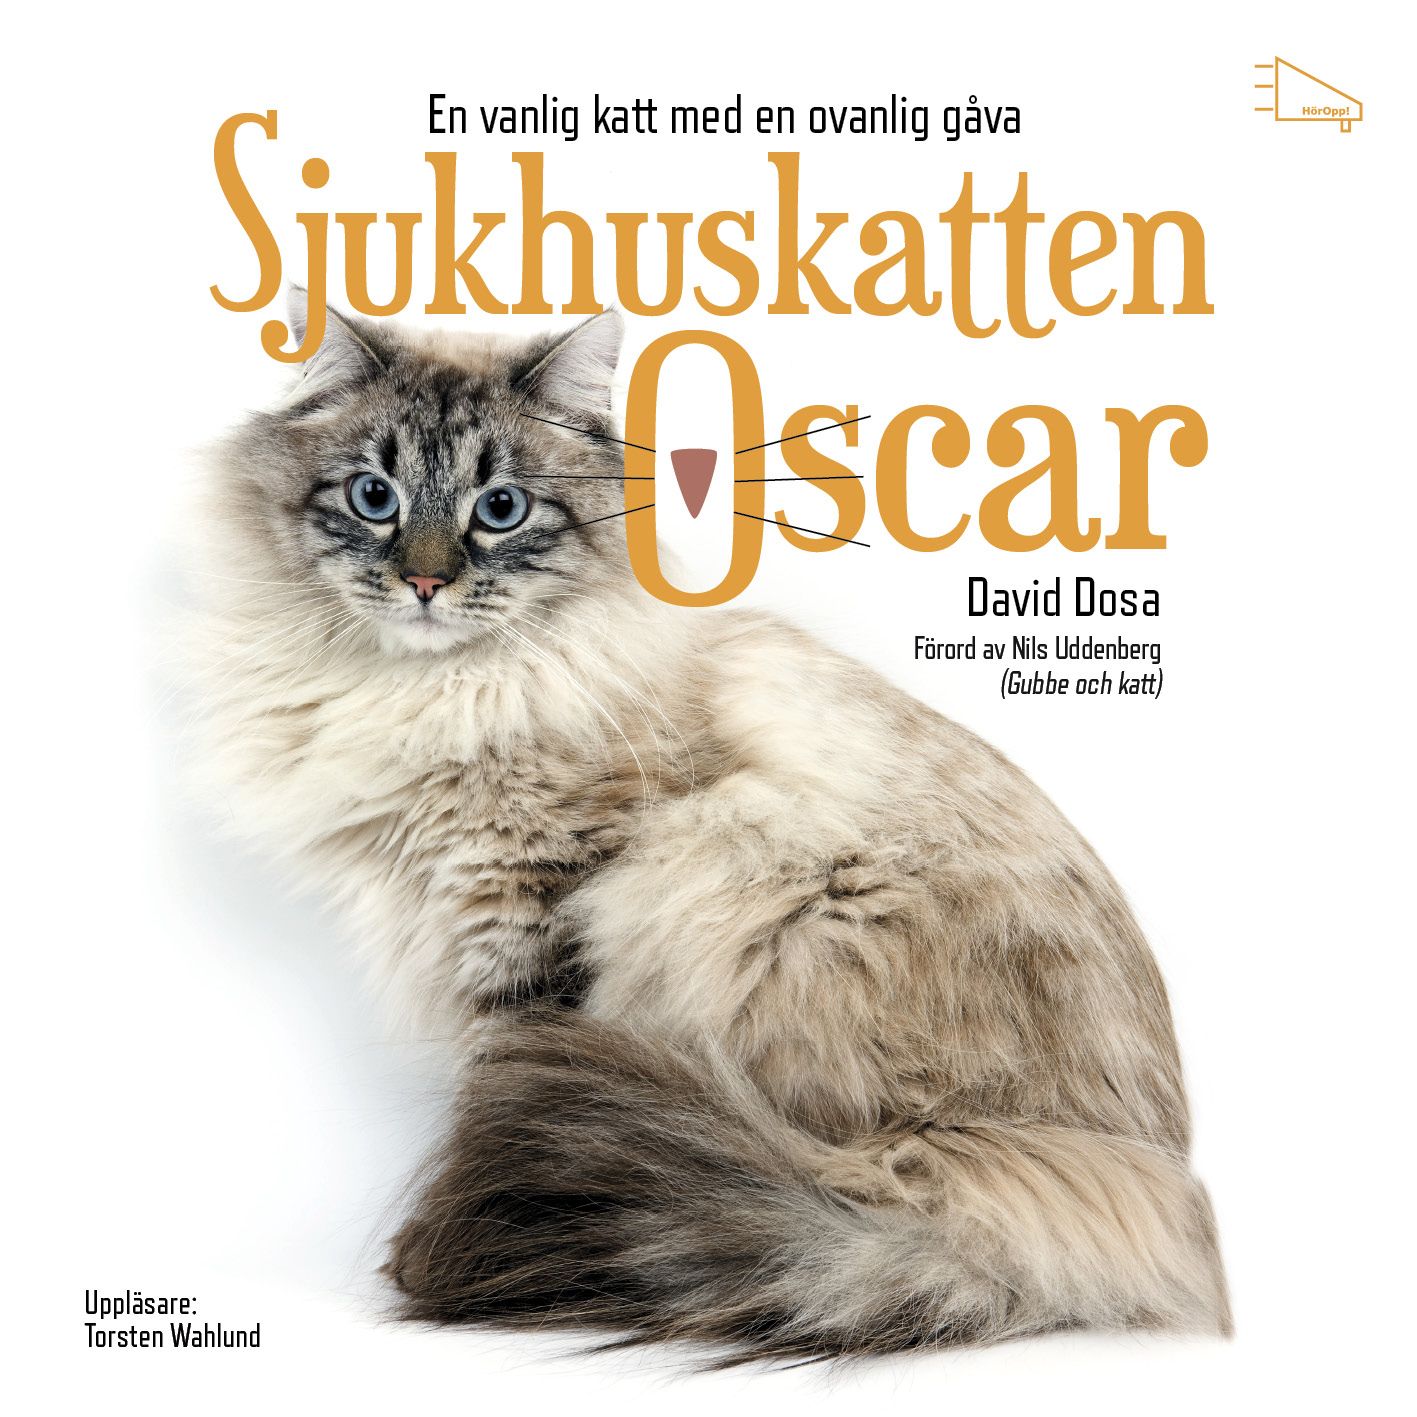 Sjukhuskatten Oscar : En vanlig katt med en ovanlig gåva, audiobook by David Dosa